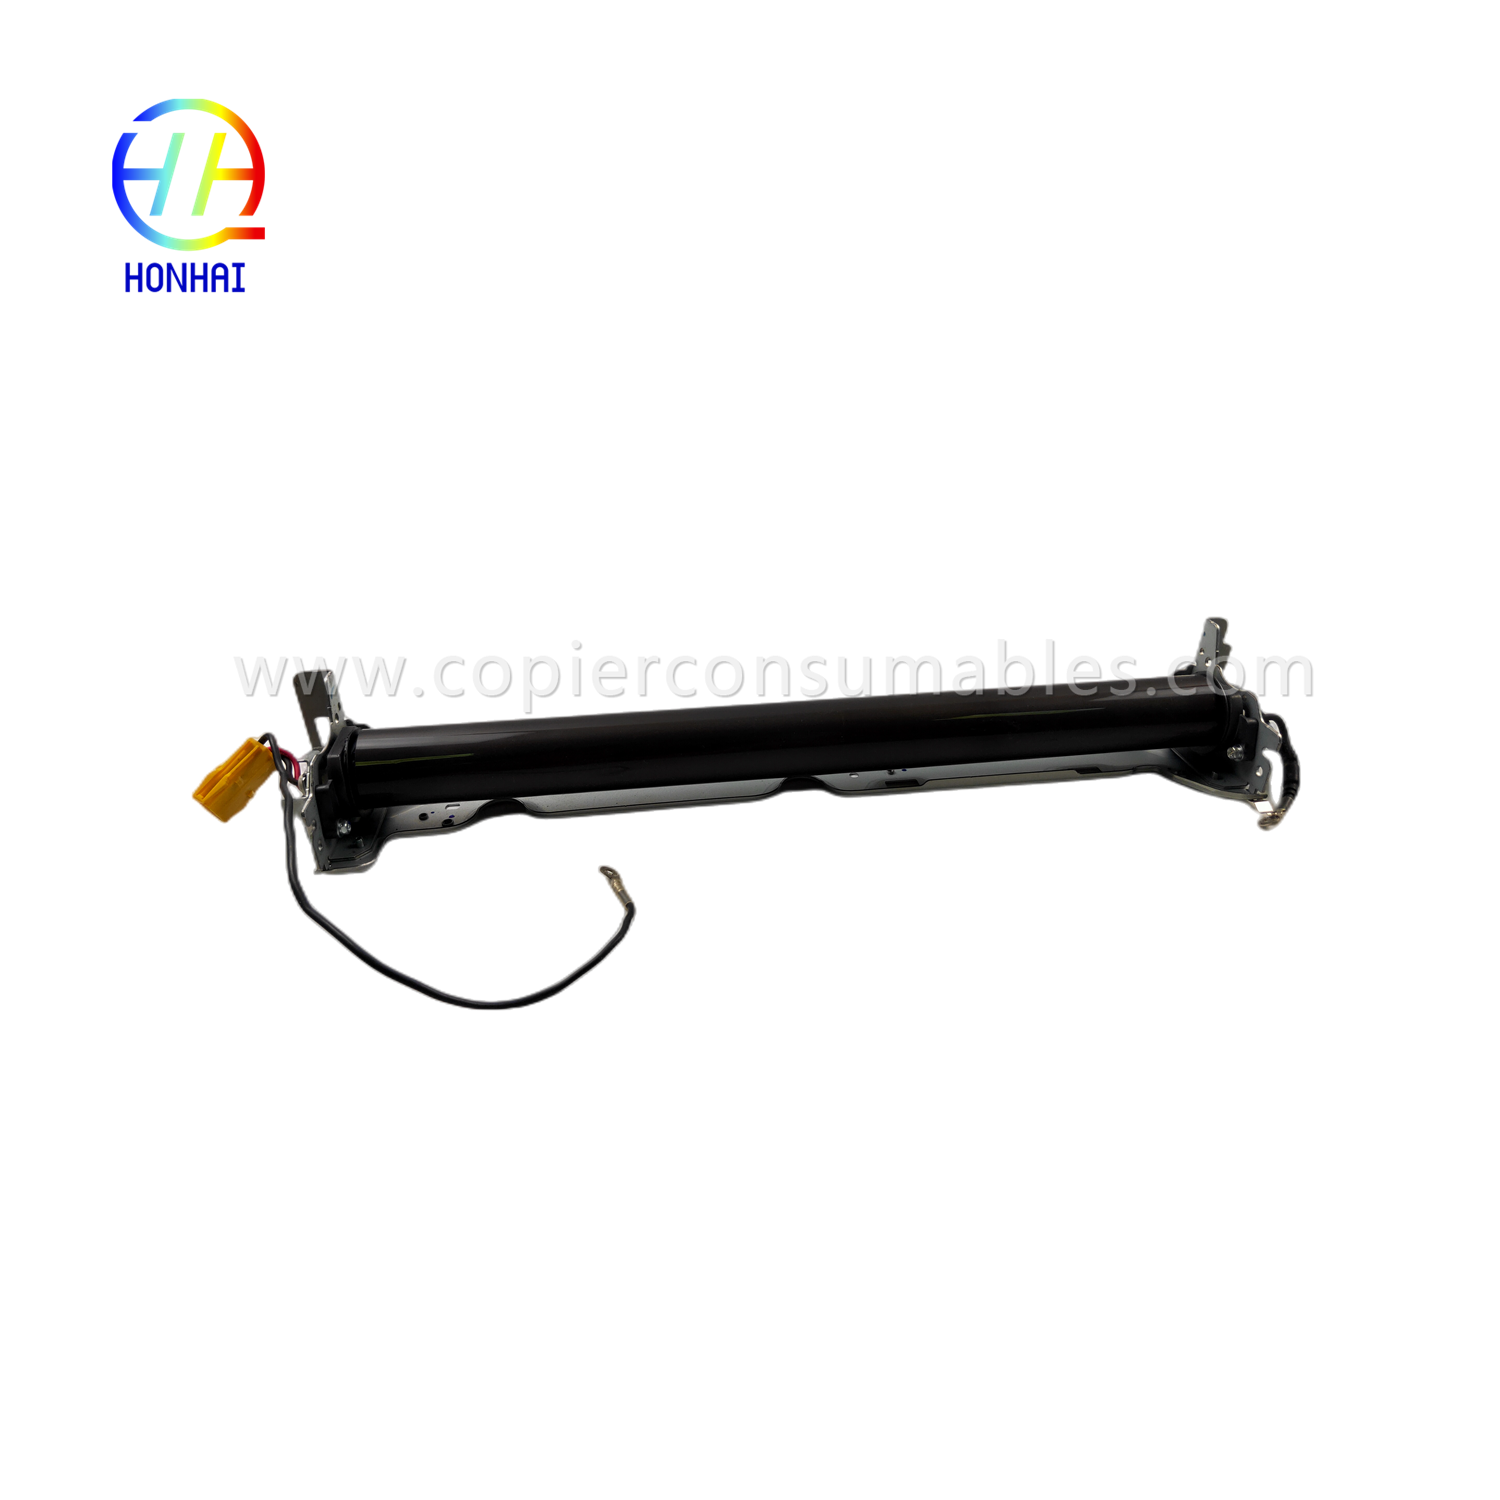 Unit pilem Fuser 220V pikeun Ricoh MP5054 D895-4051 D8954051 Unit Fixing Fuser